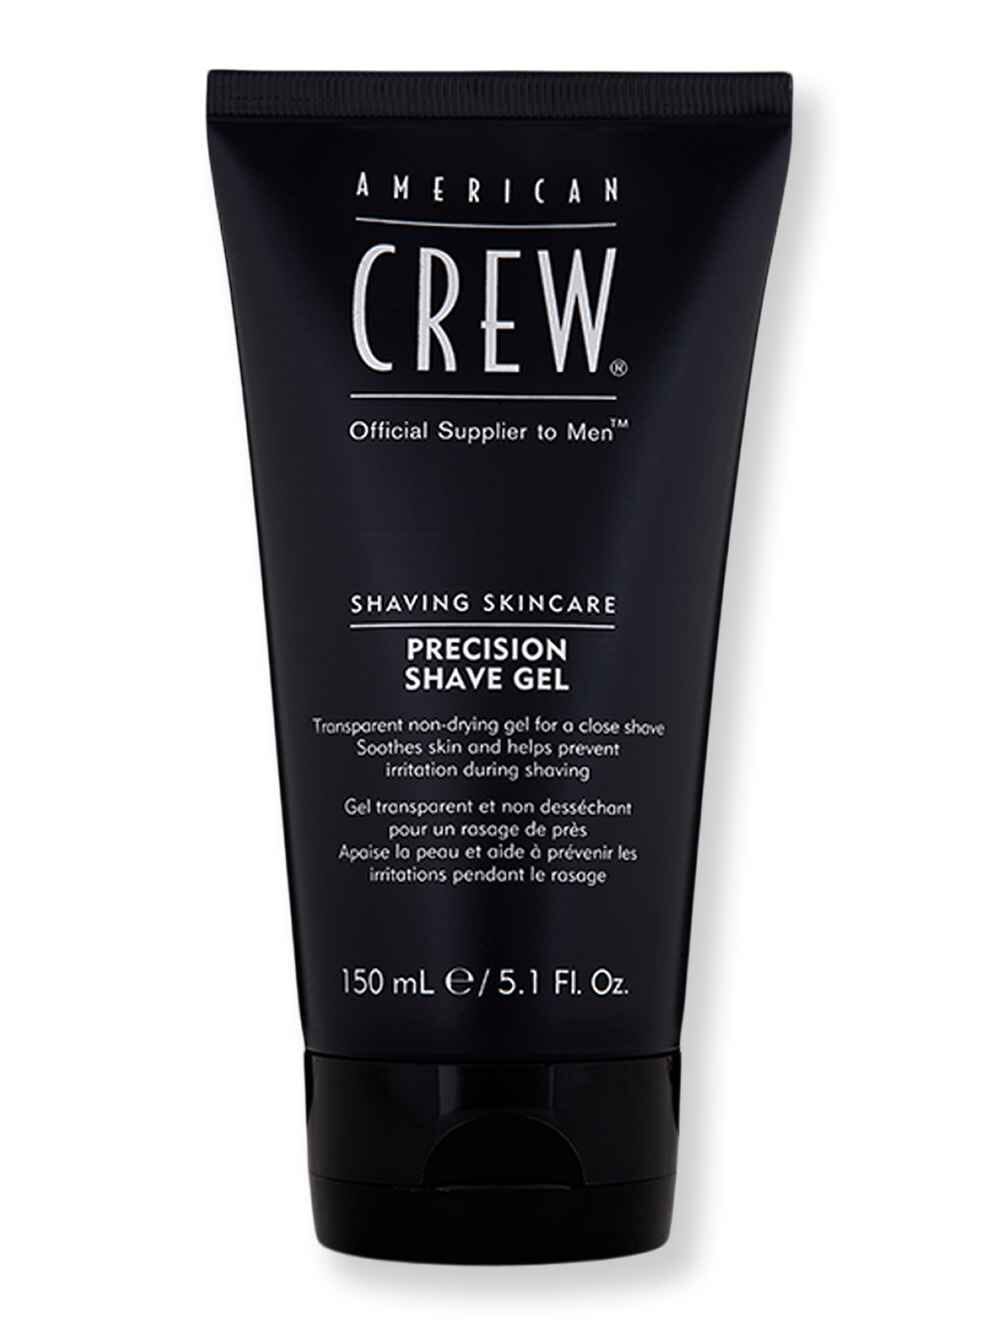 American Crew American Crew Precision Shave Gel 5.1 oz150 ml Shaving Creams, Lotions & Gels 